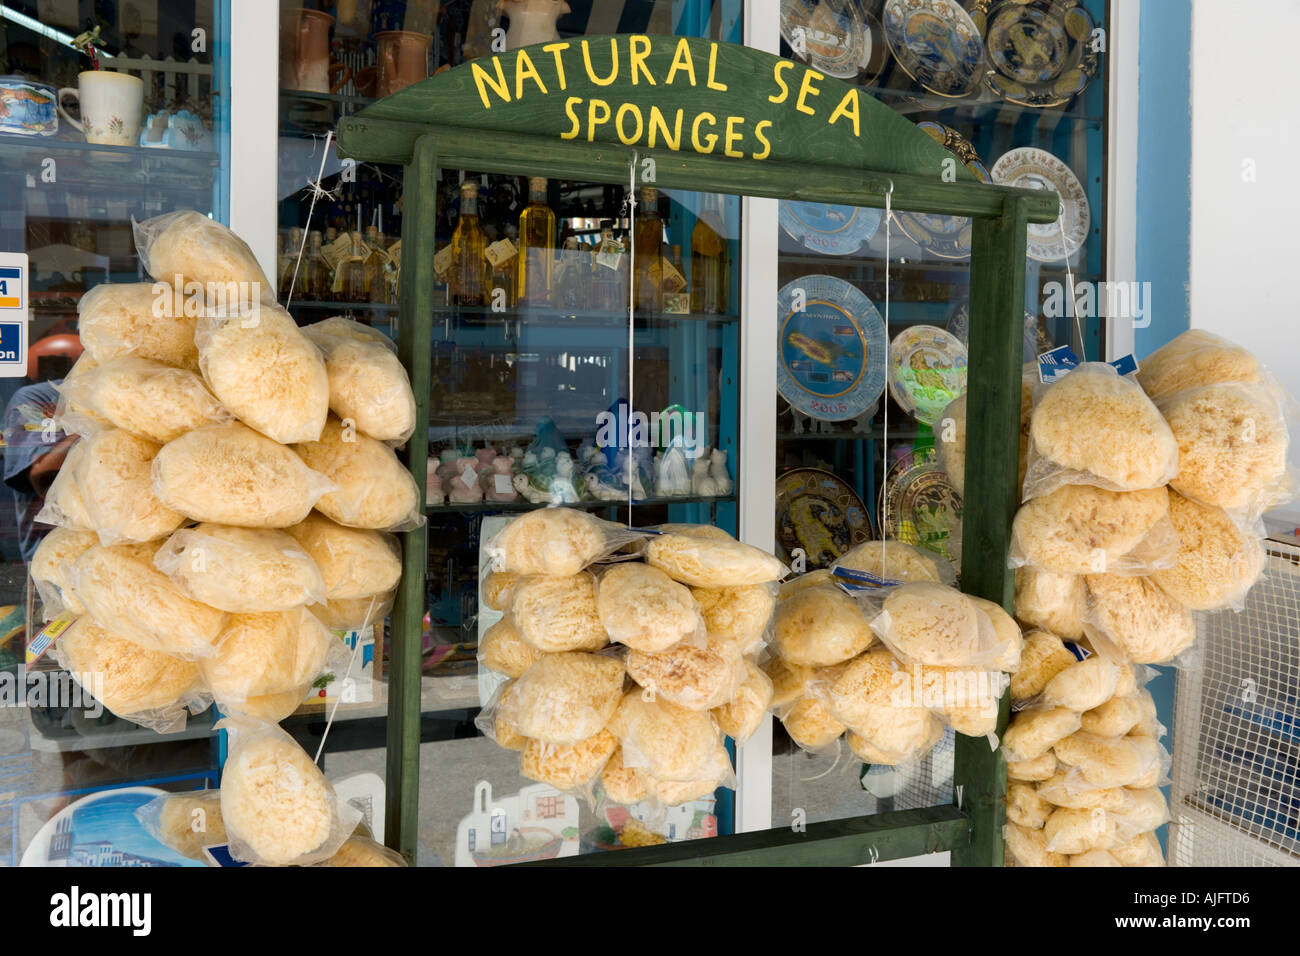 Boutique vendant des éponges de mer naturelles, Zante, îles Ioniennes, Grèce Banque D'Images